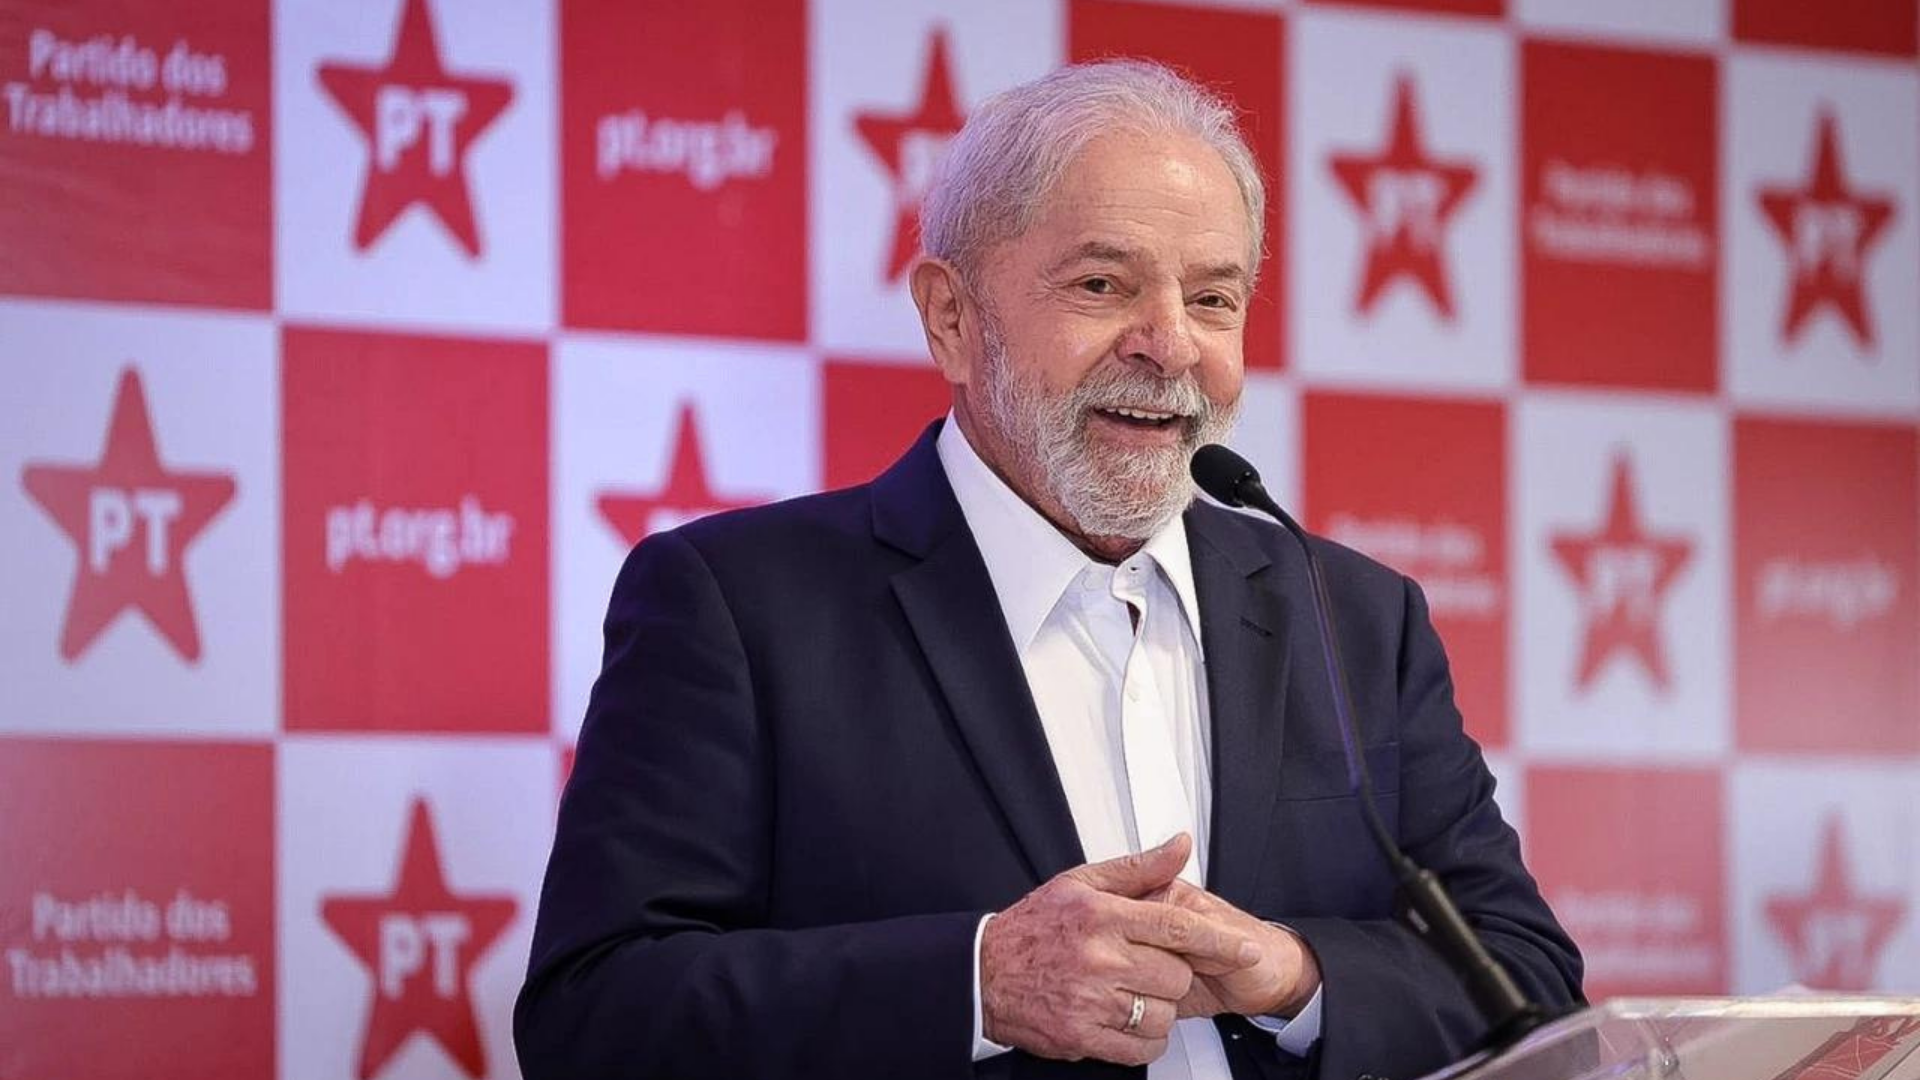 Foto de Lula sorrindo durante uma coletiva de imprensa.